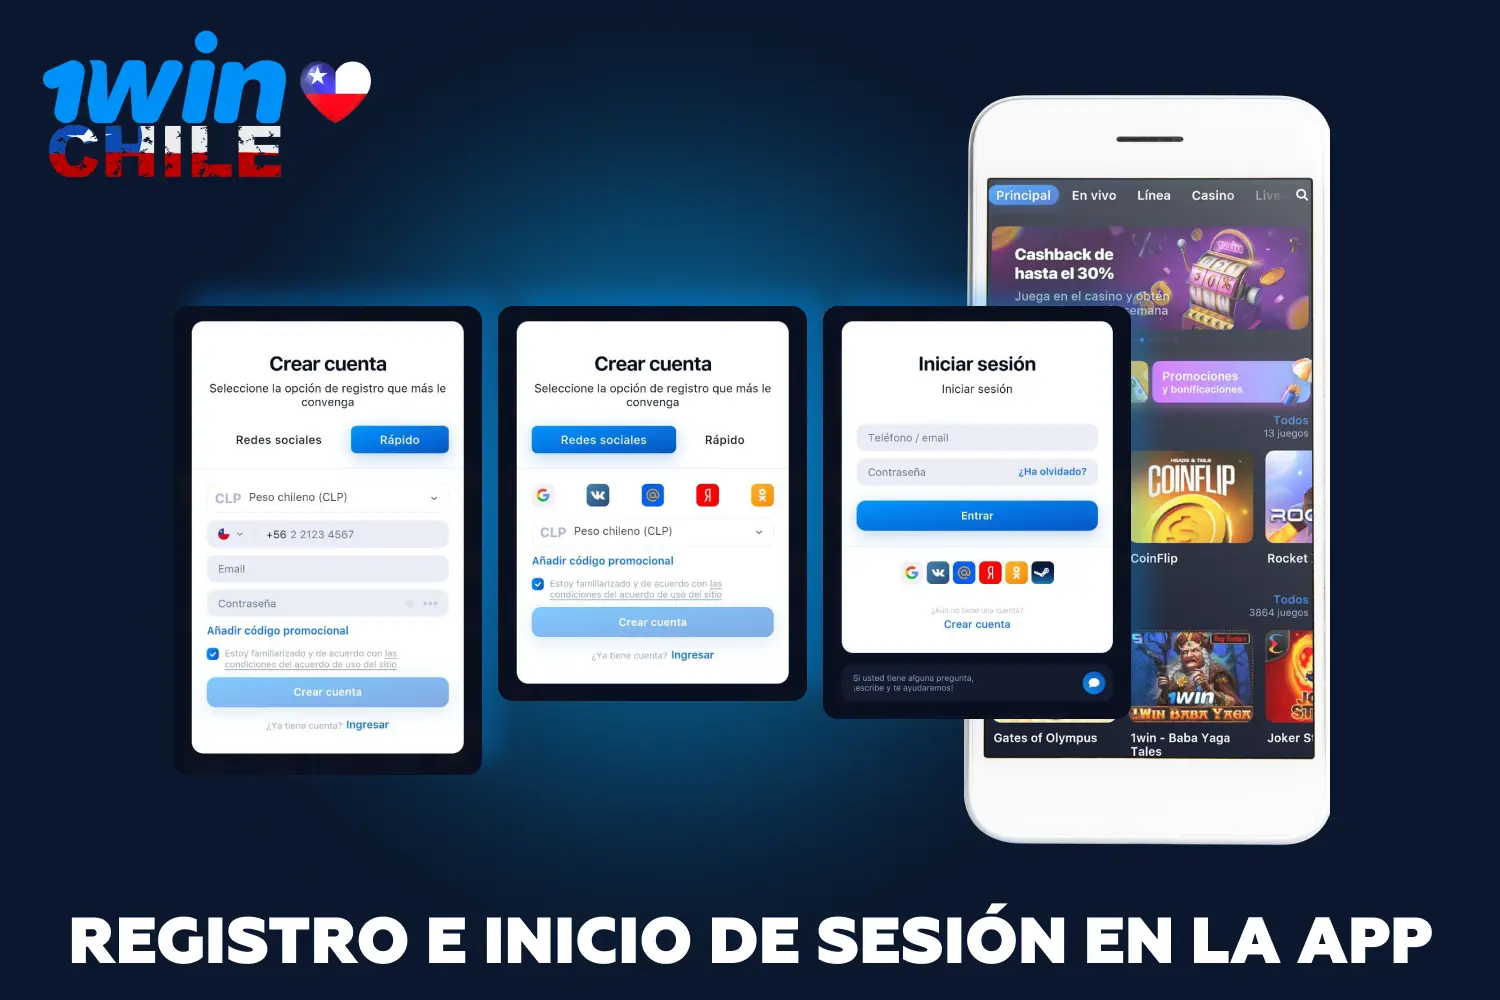 Tras registrarse en la aplicación 1win, los jugadores de Chile tendrán acceso a todos los juegos de casino y apuestas deportivas